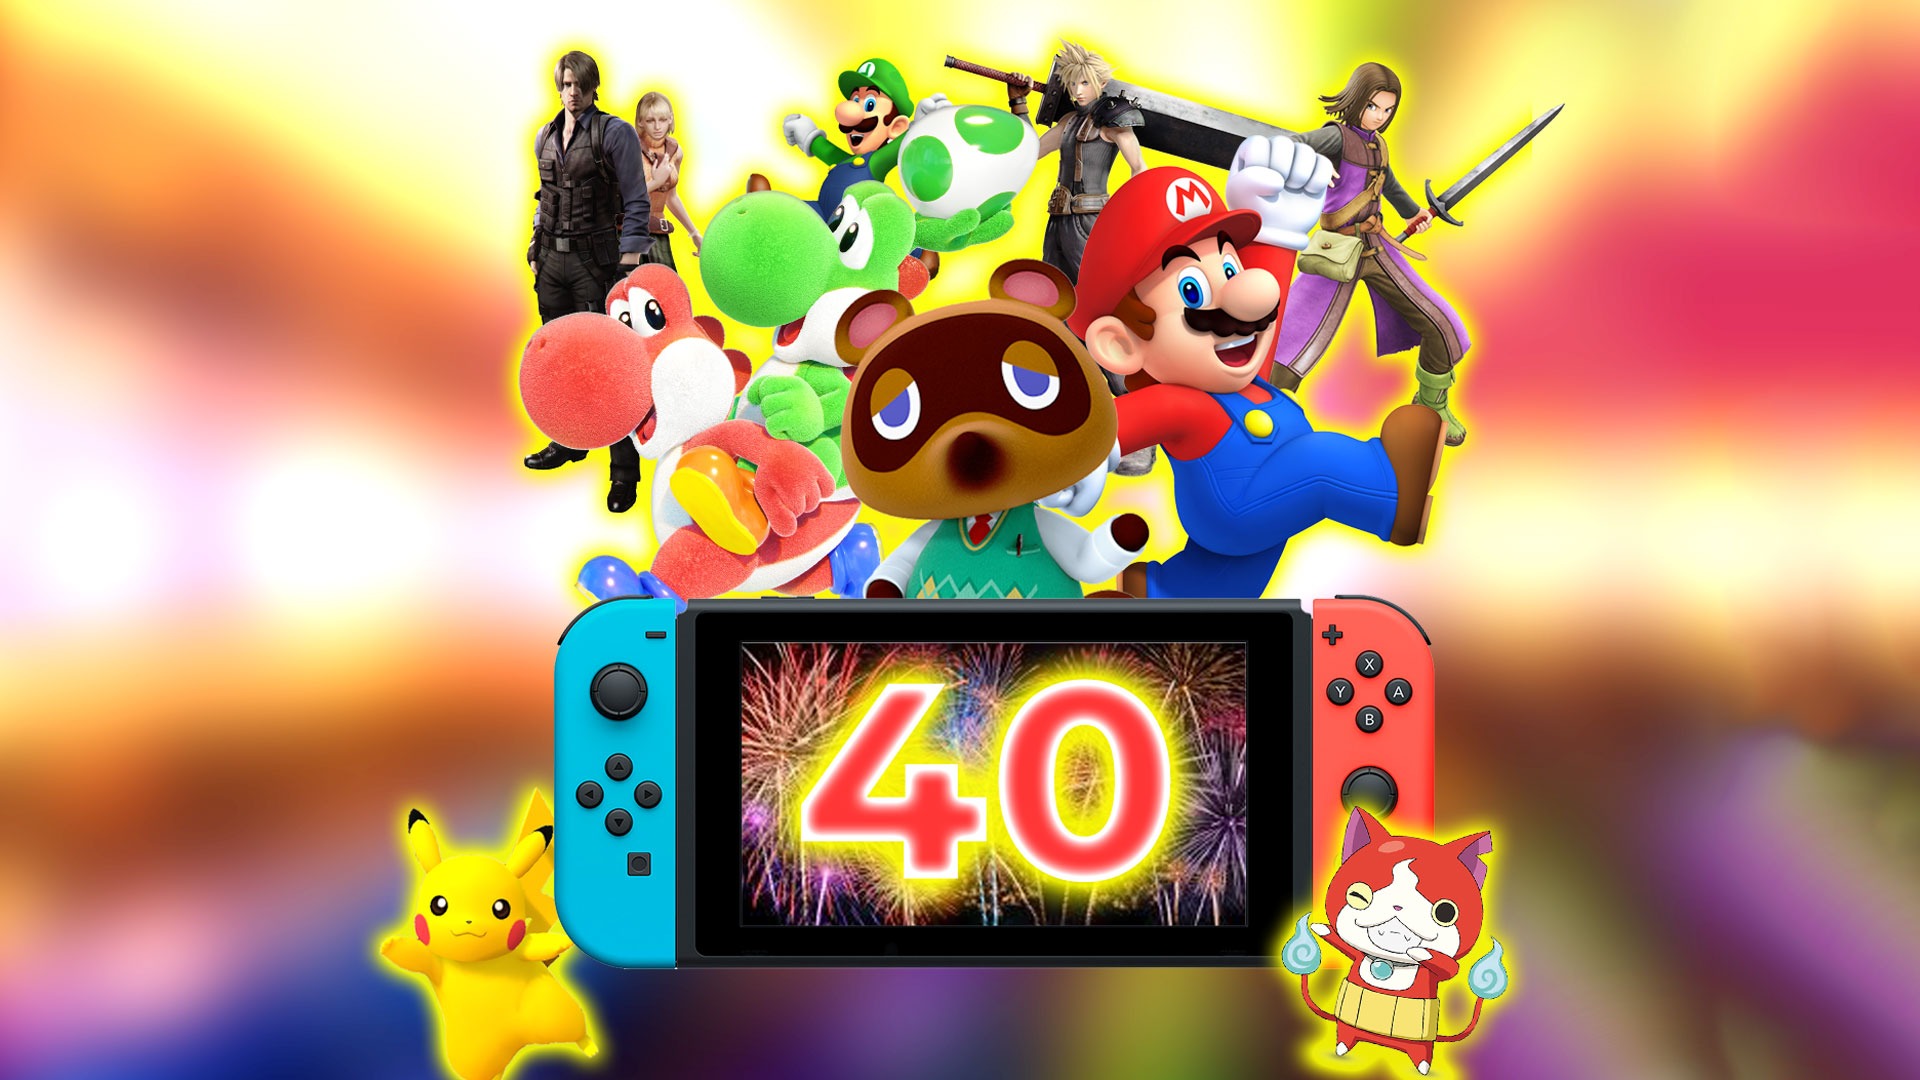 Los 40 grandes juegos confirmados para Switch en 2019